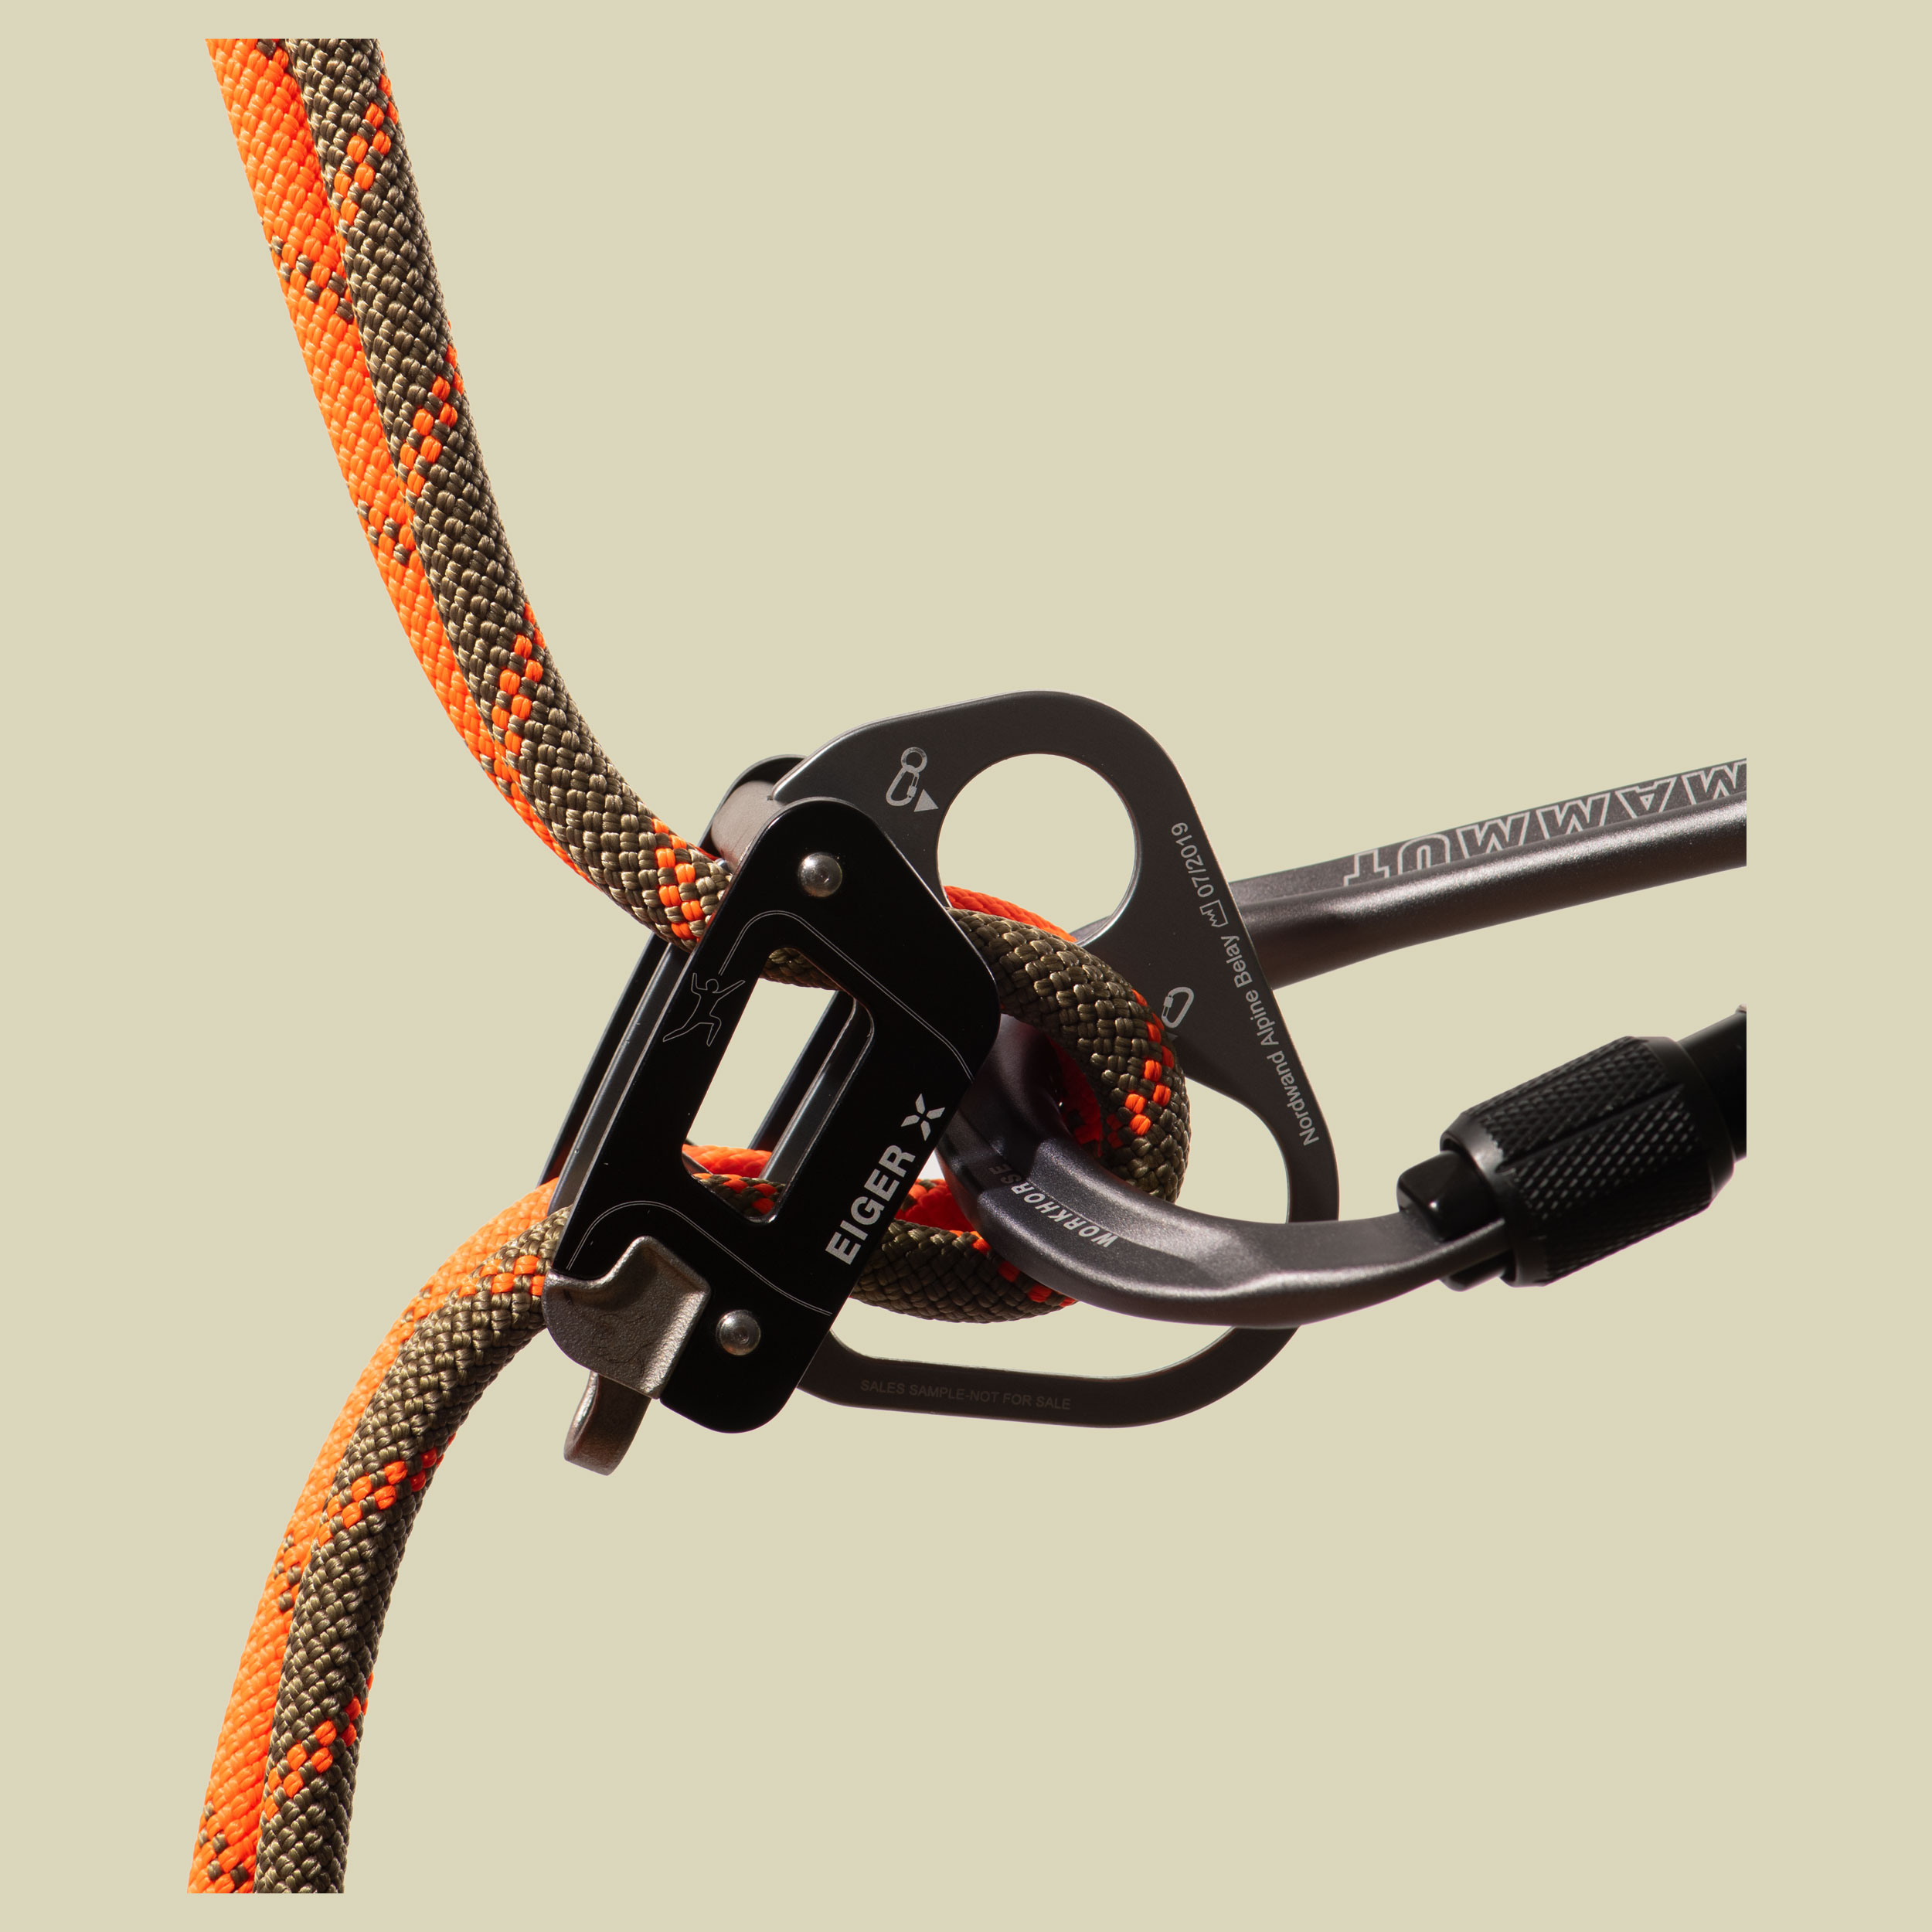 8.0 Alpine Dry Rope Dry Standard boa-safety orange 70 m - boa-safety orange